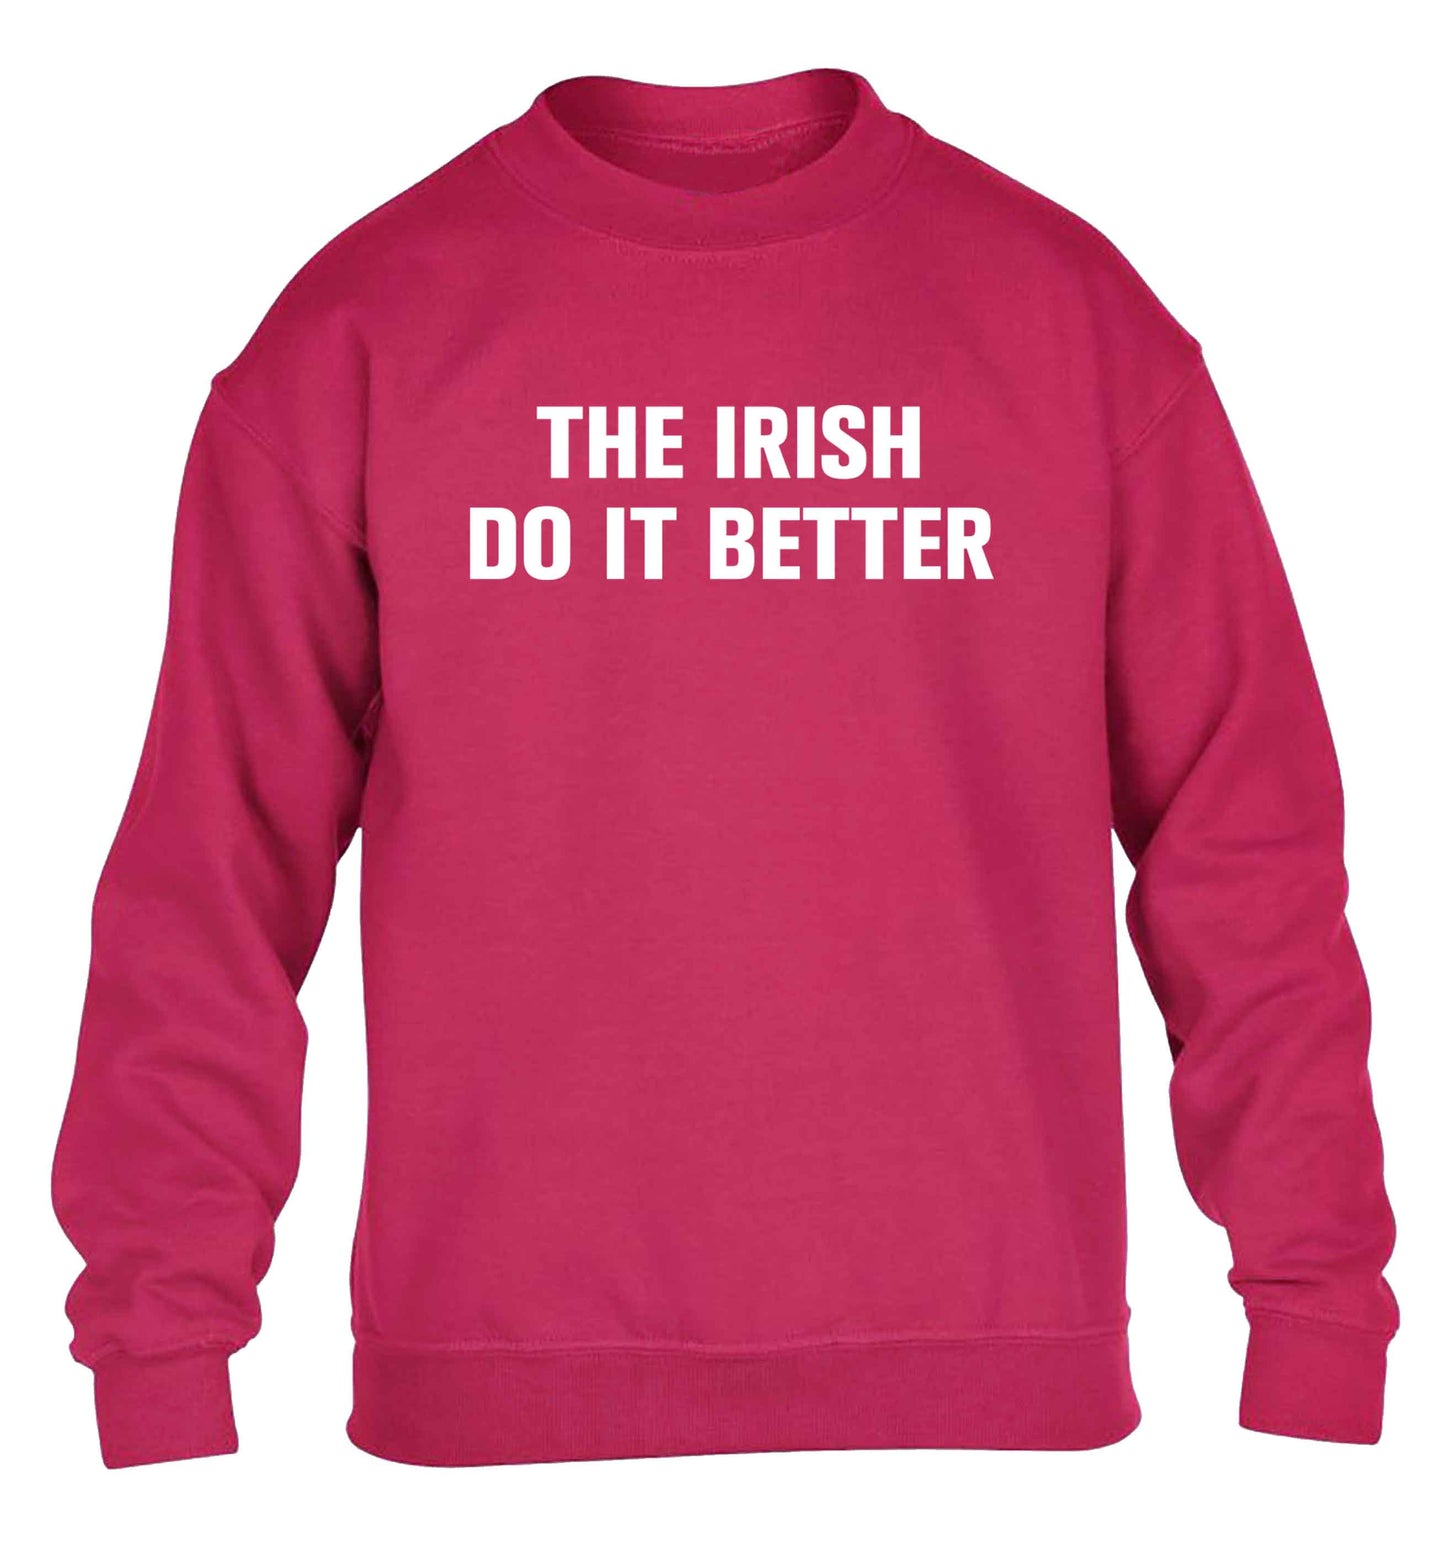 The Irish do it better children's pink sweater 12-13 Years